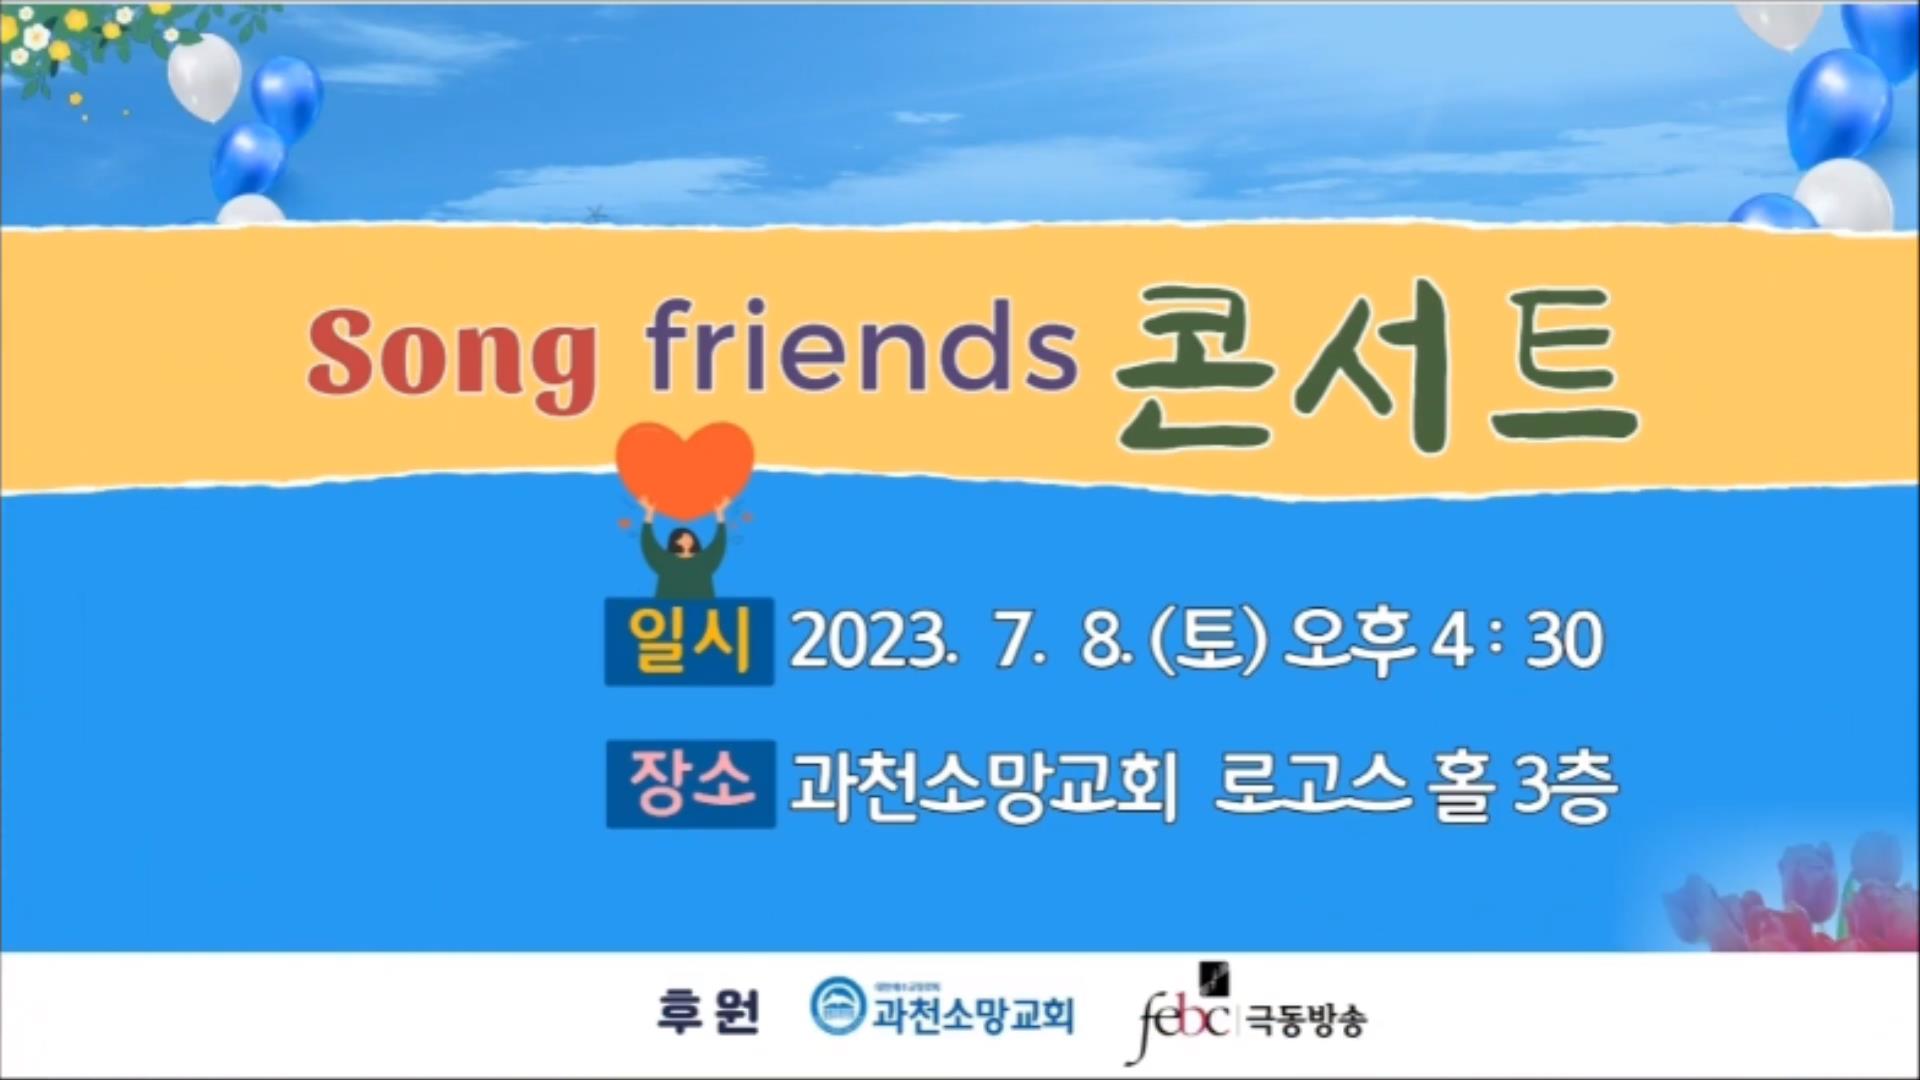 《Song friends 콘서트》 2023 7월8일(토) 오후4시30분[극동방송 복음성가경연대회] 대상 팀들의 공연 안내 (1080p) 0000040956ms.jpg